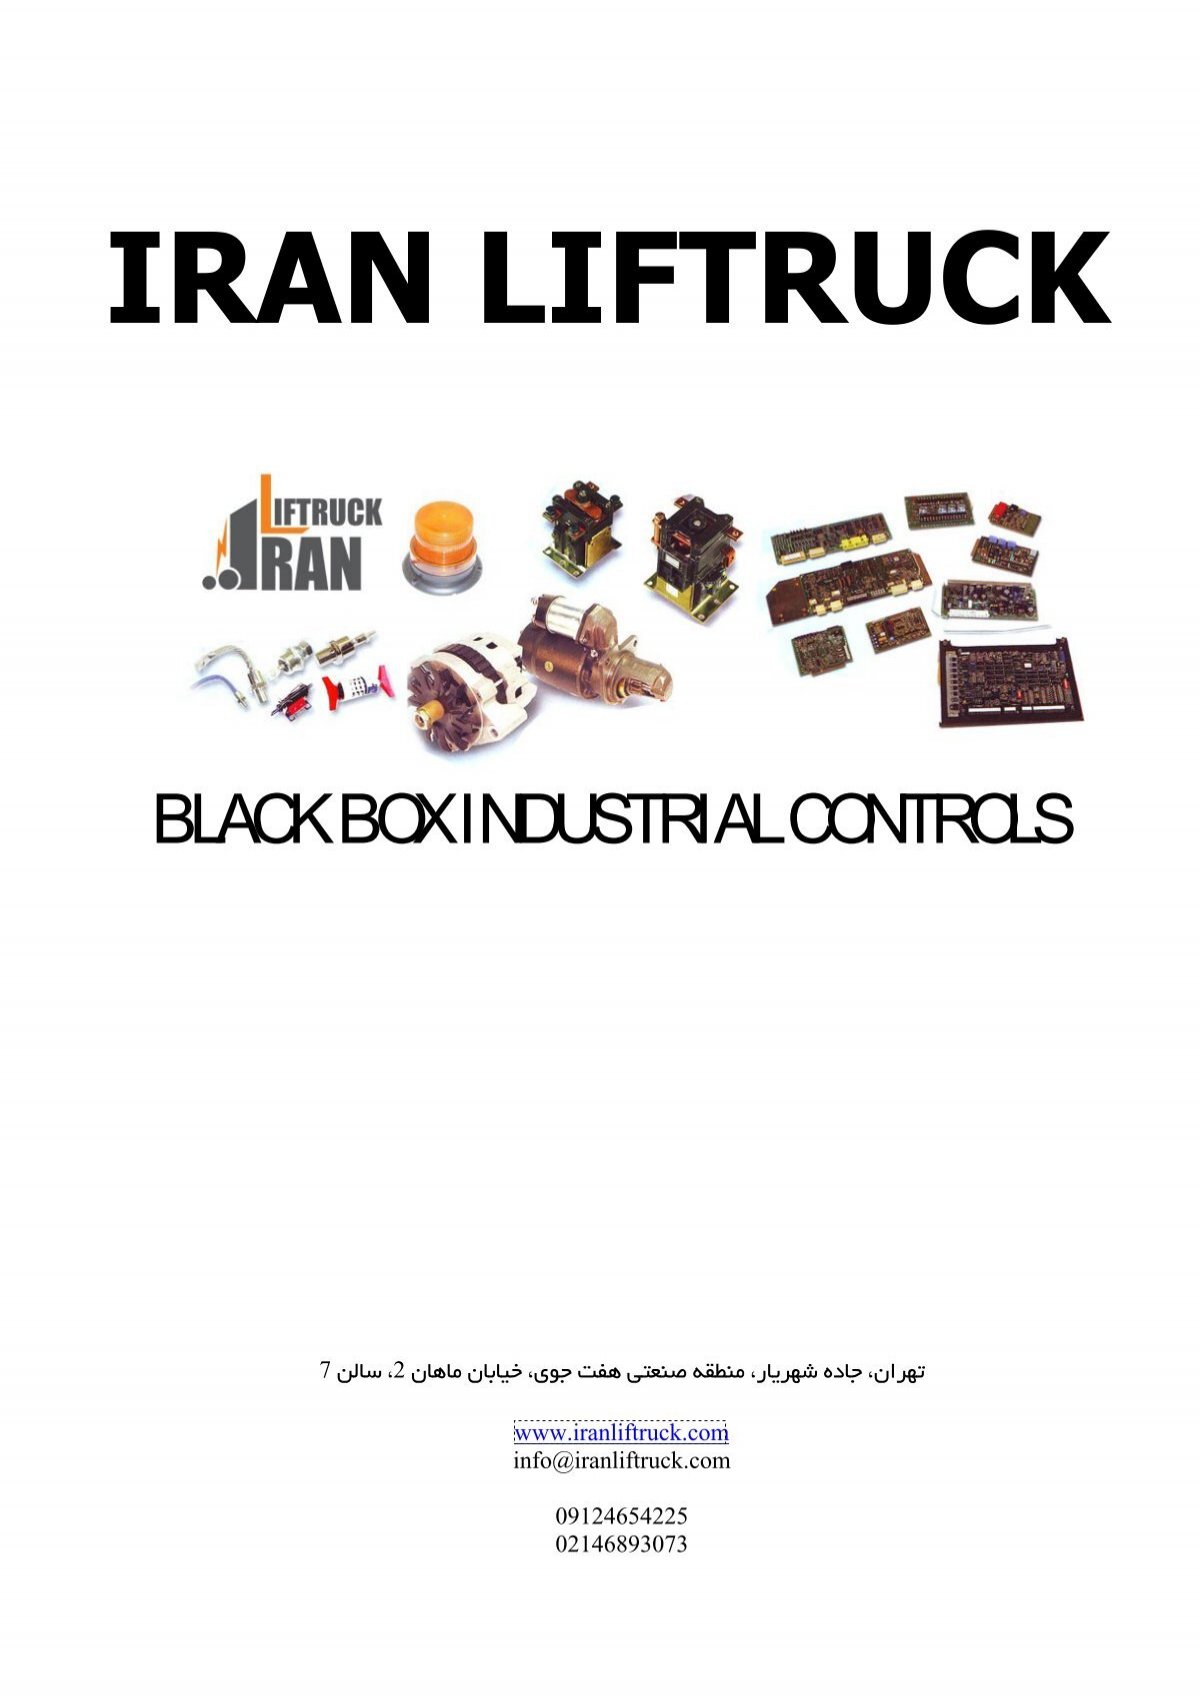 Black Box Industrial Controls Iranliftruck Com